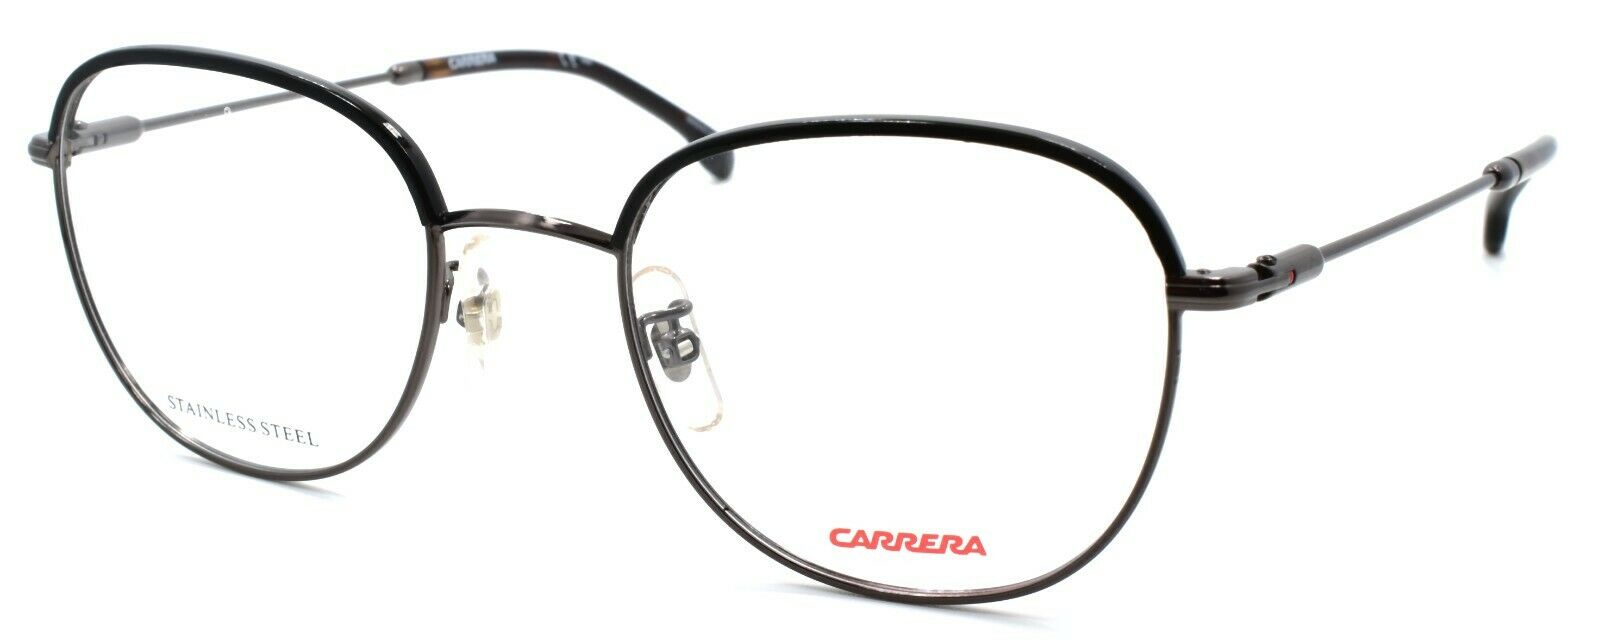 1-Carrera CA181/F V81 Eyeglasses Frames 51-21-145 Dark Ruthenium / Black-716736094731-IKSpecs